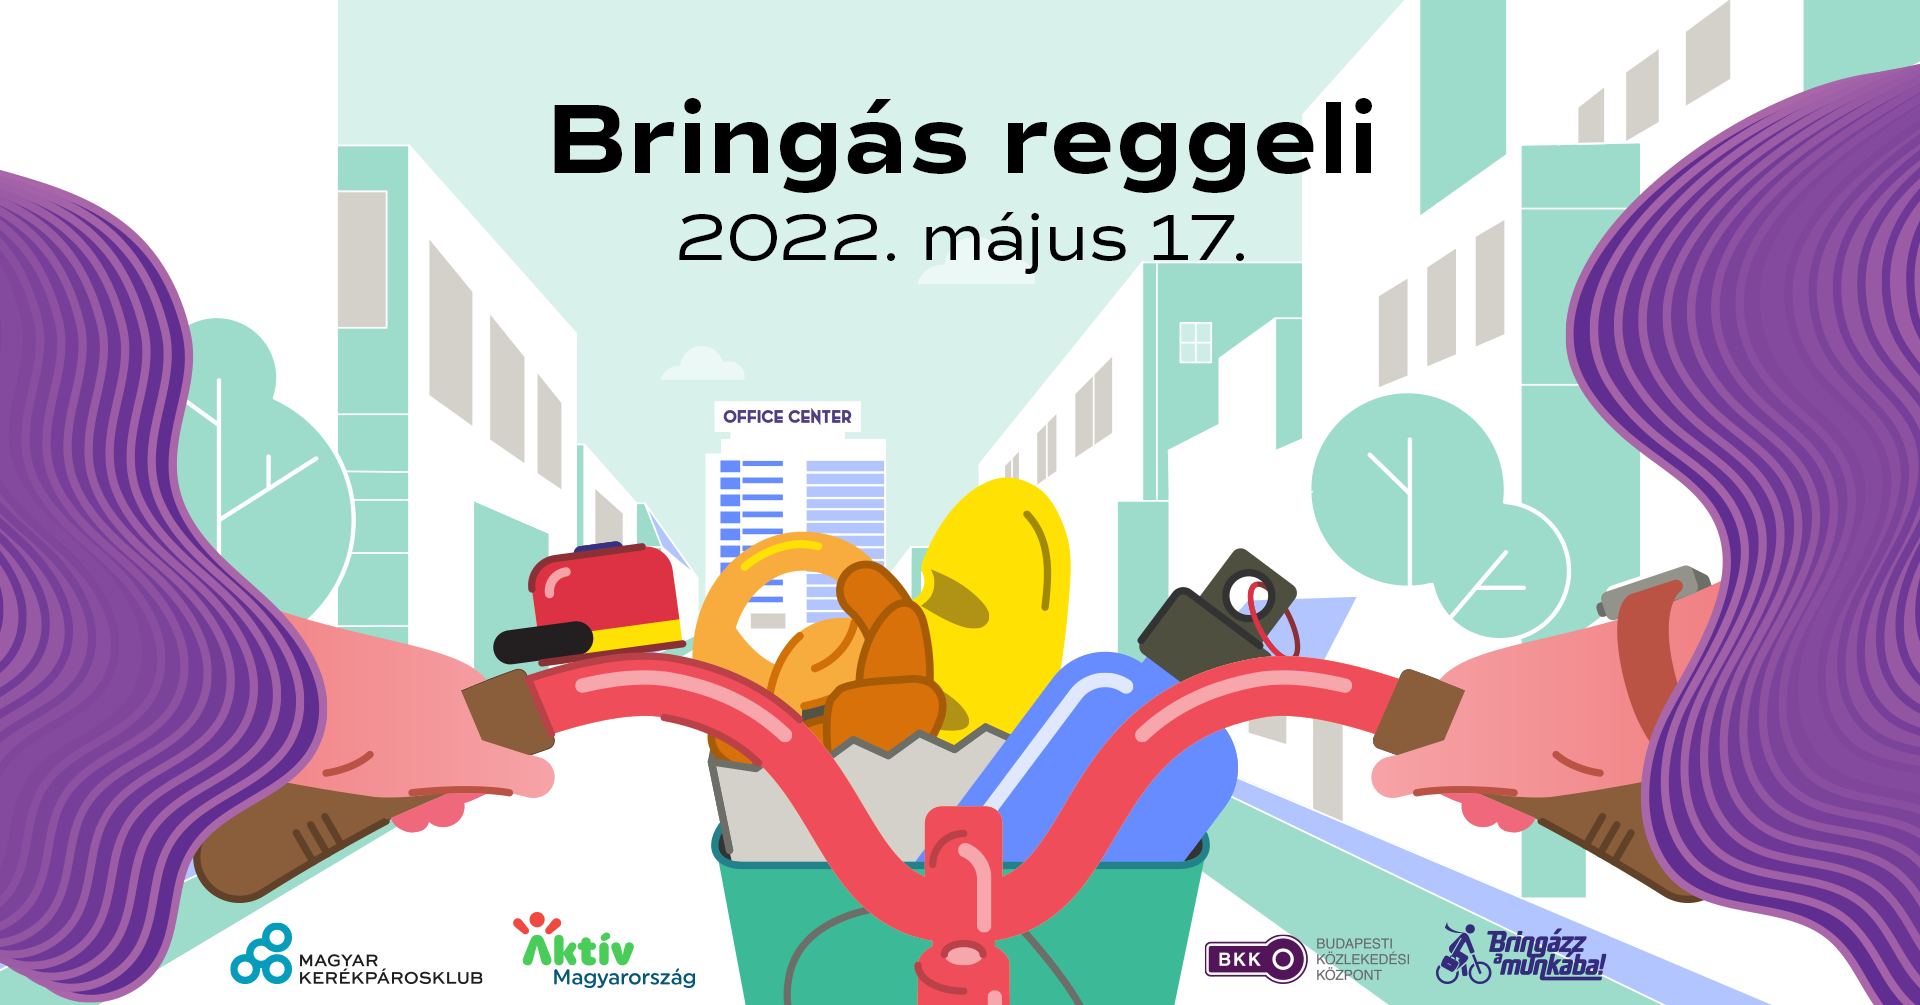 BAM 2022 reggeli FB event cover